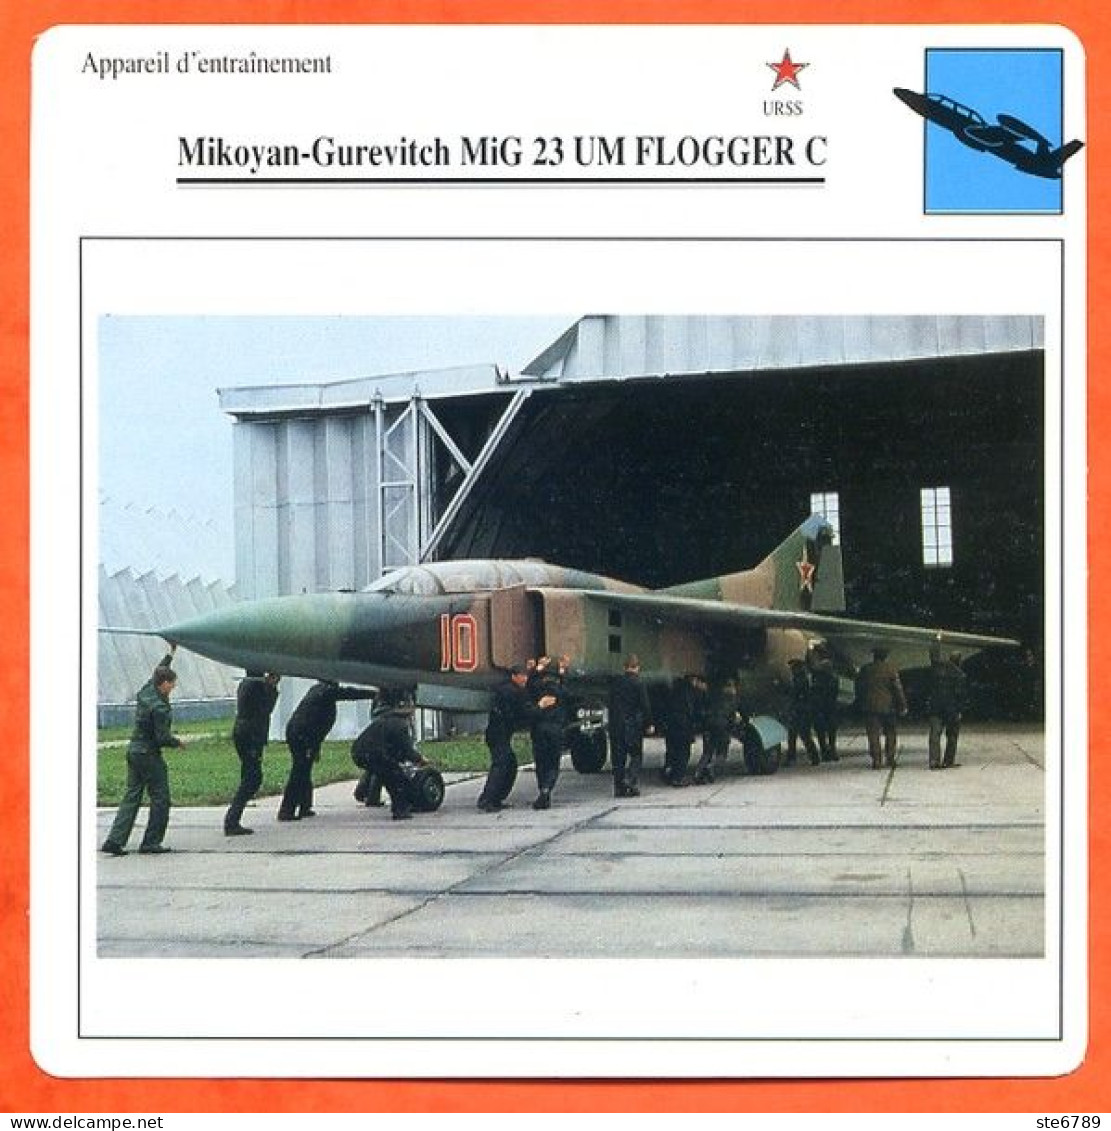 Fiche Aviation Mikoyan Gurevitch MiG 23 UM FLOGGER C  / Avion Appareil D'entrainement URSS Avions - Aerei